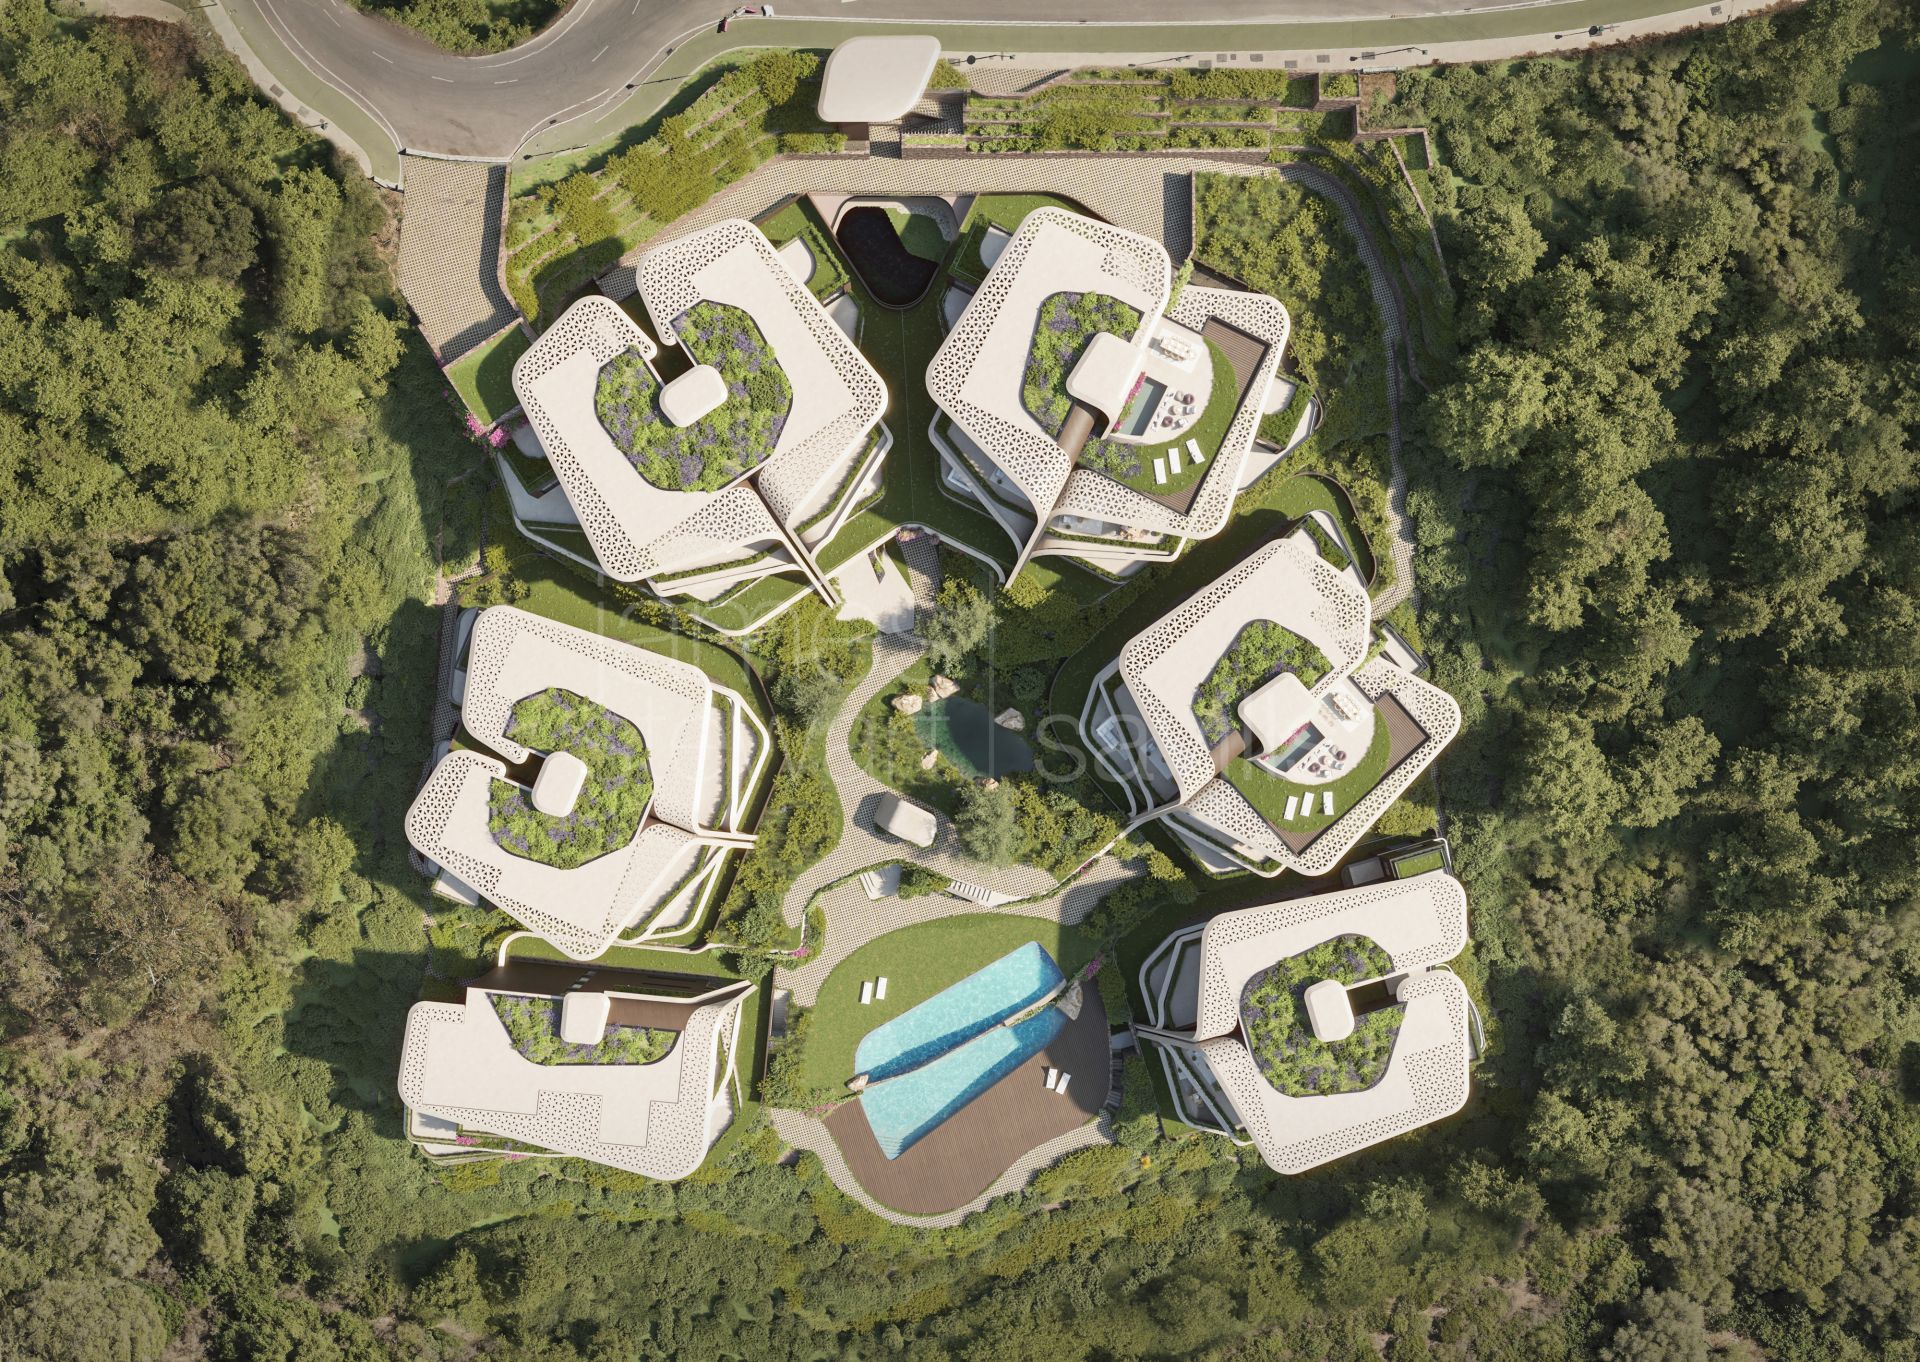 Fabuloso proyecto nuevos apartamentos futuristas junto al Colegio Internacional de Sotogrande con servicios semi-hoteleros.